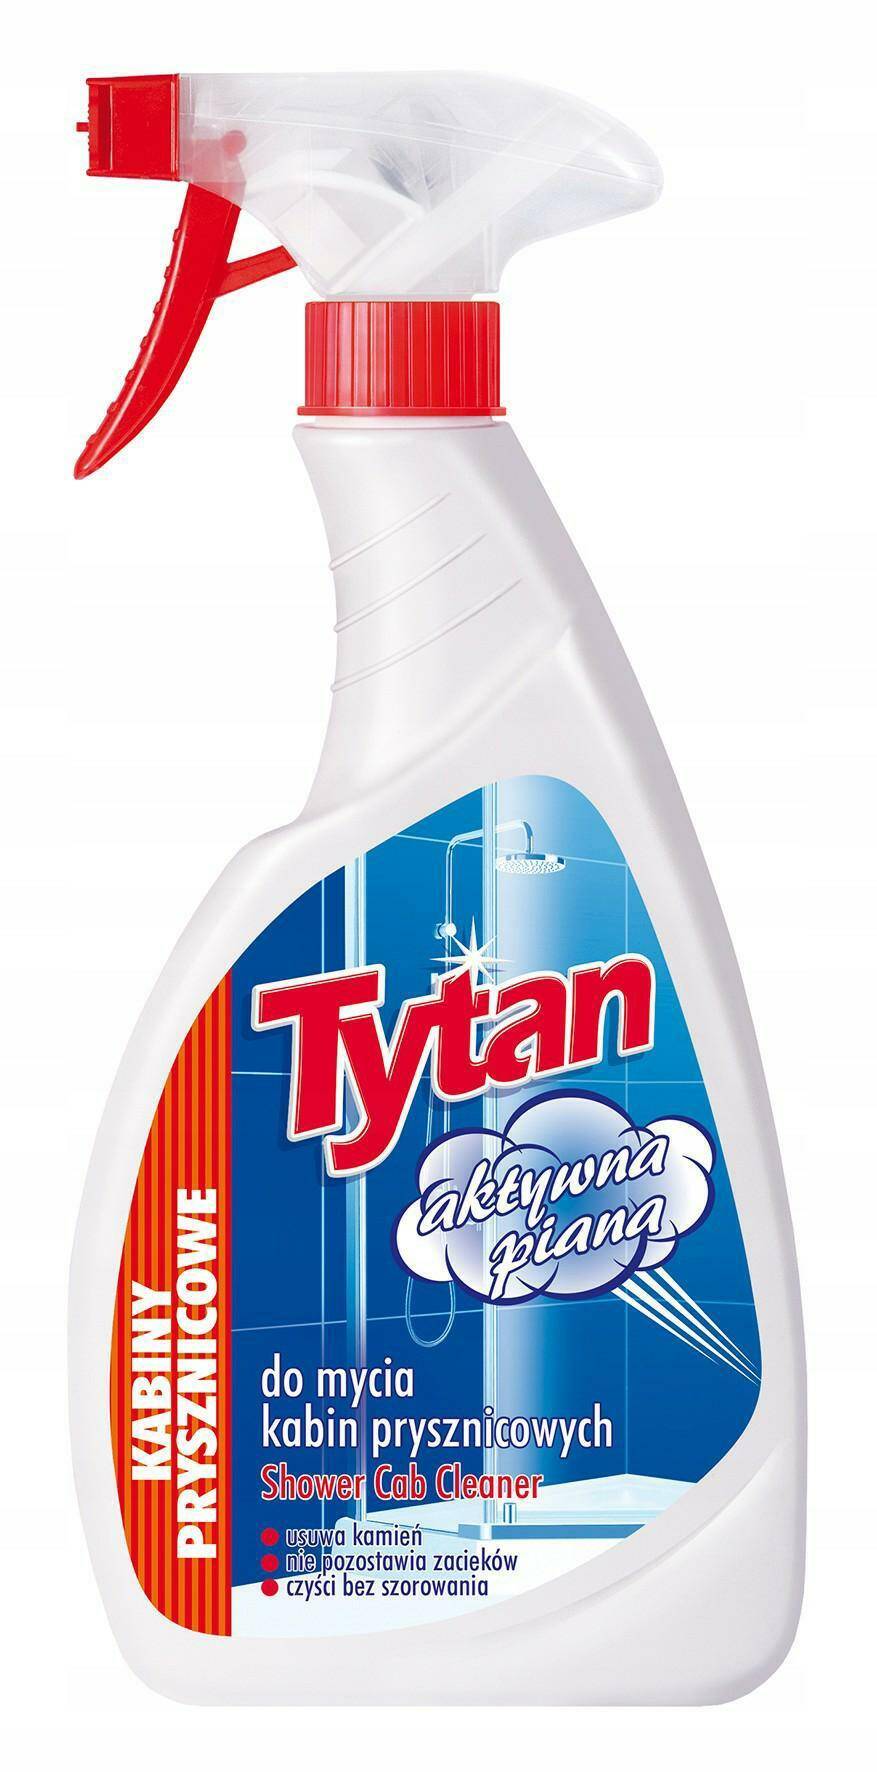 TYTAN 500g spray KABINY PRYSZNICOWE (8%)